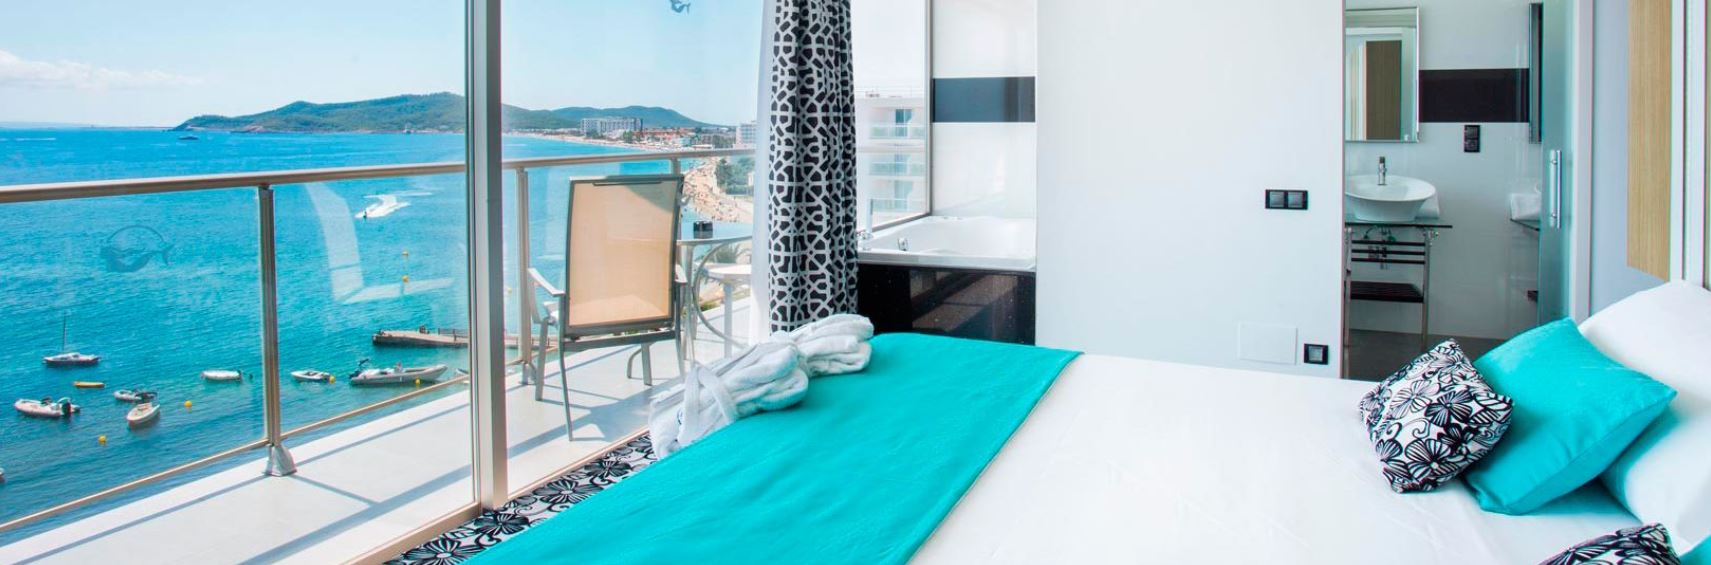 Habitaciones con terraza y vistas al mar en Hotel Sirenis Goleta Ibiza